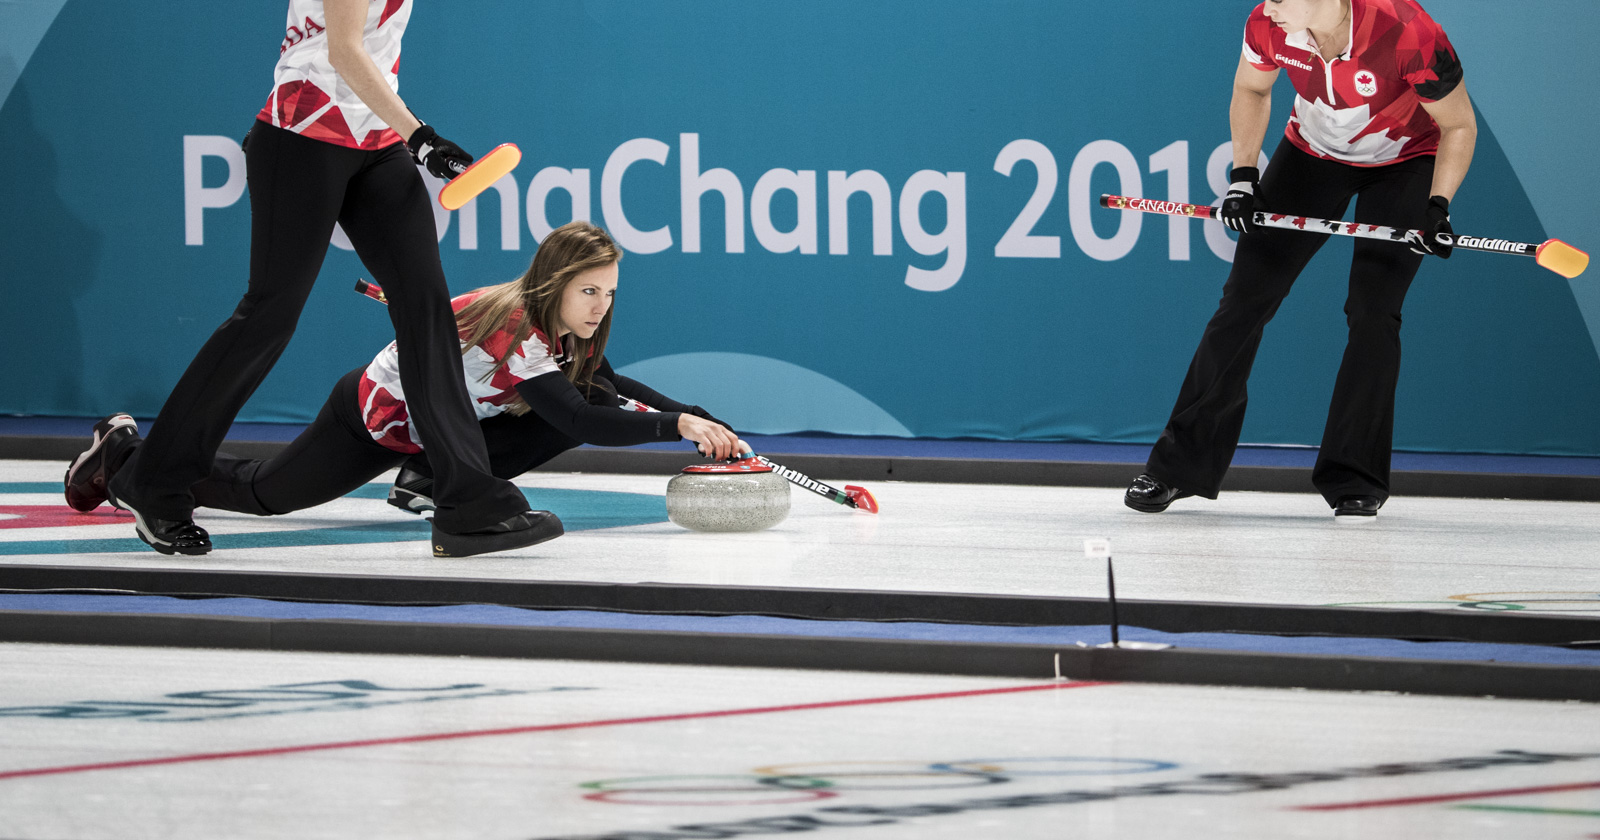 Équipe Homan en action aux Jeux olympique de PyeongChang, le 14 février 2018. (Photo: Stephen Hosier)